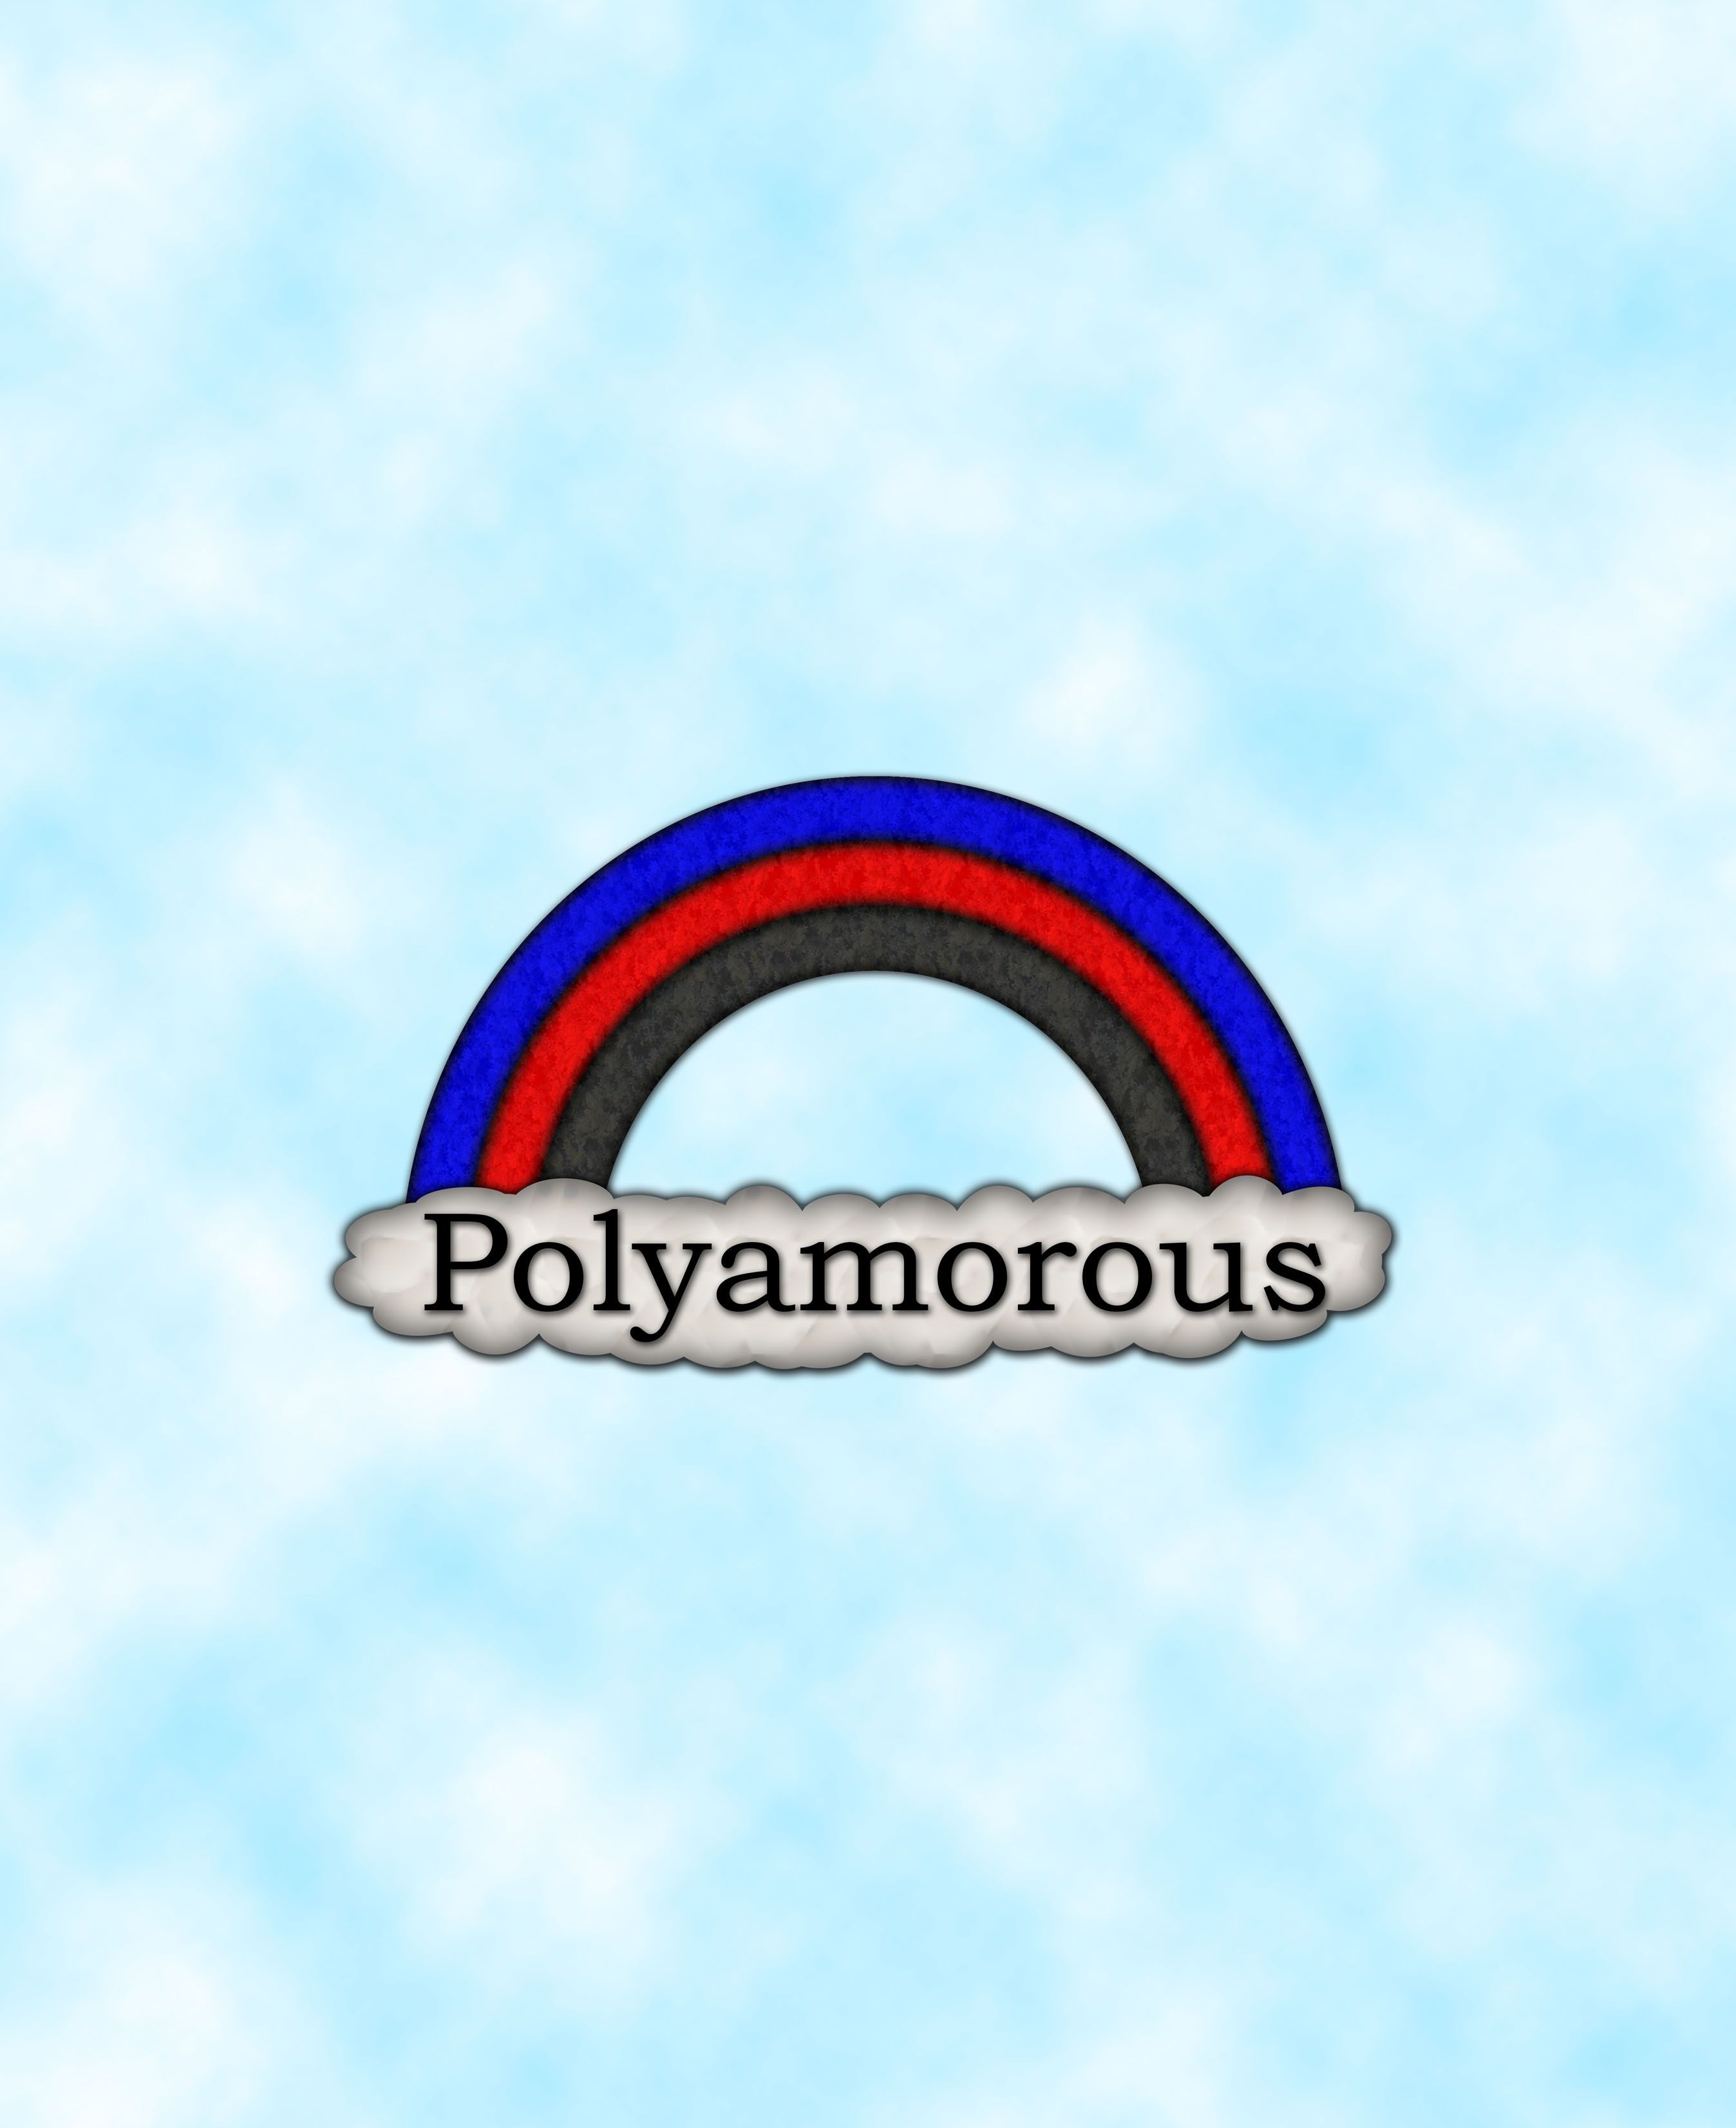 Polyamory Images  Free Download on Freepik